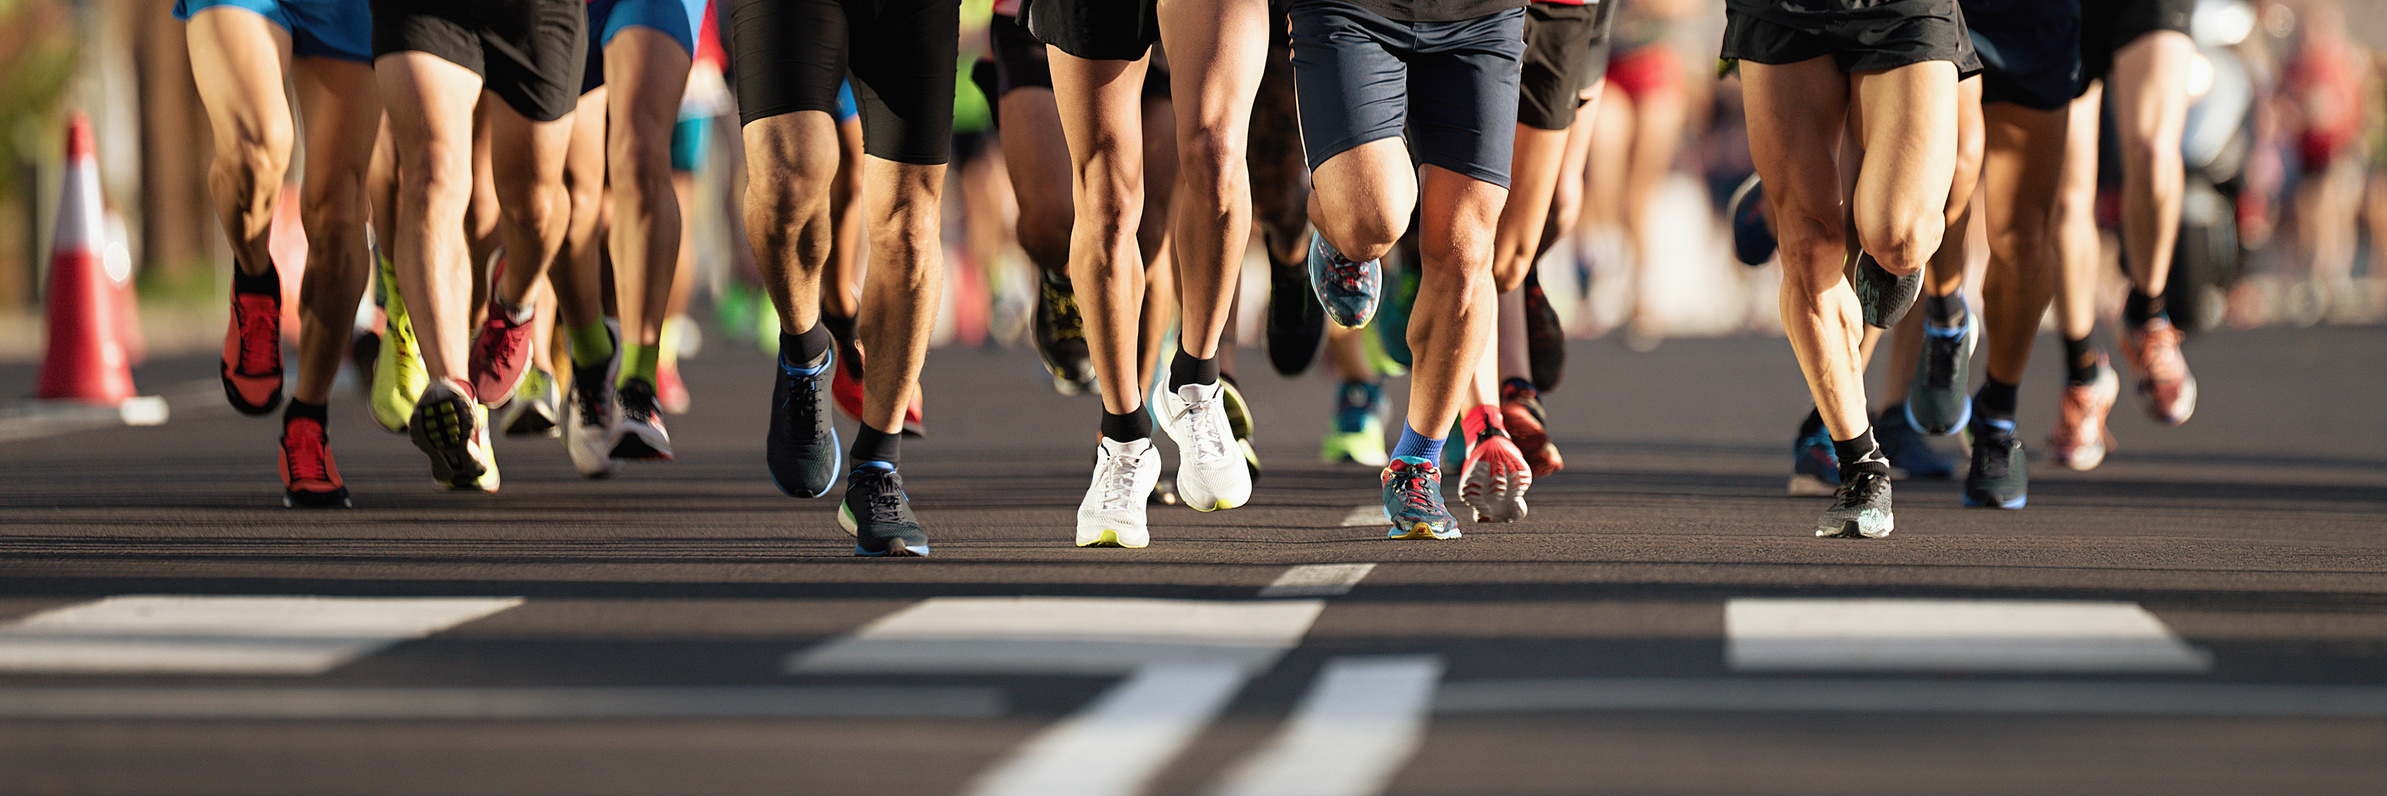 Start eines Marathons, zu sehen sind die Füße der Läufer